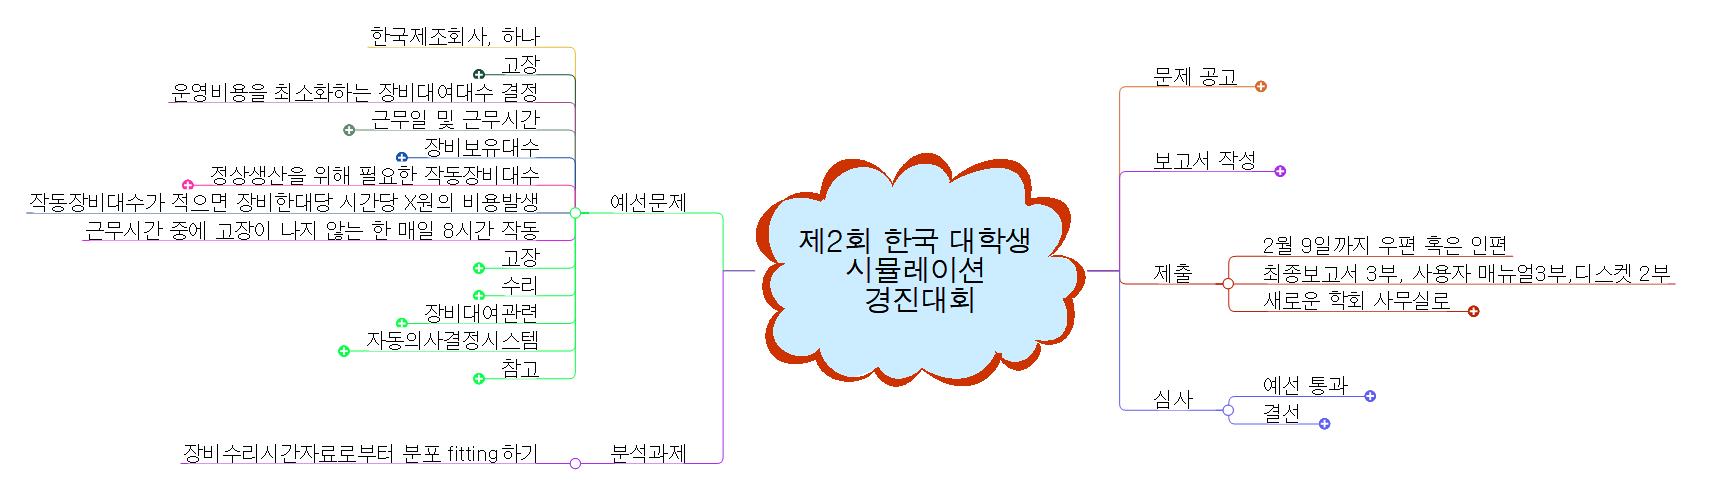 제2회 한국 대학생 시뮬레이션 경진대회 이미지